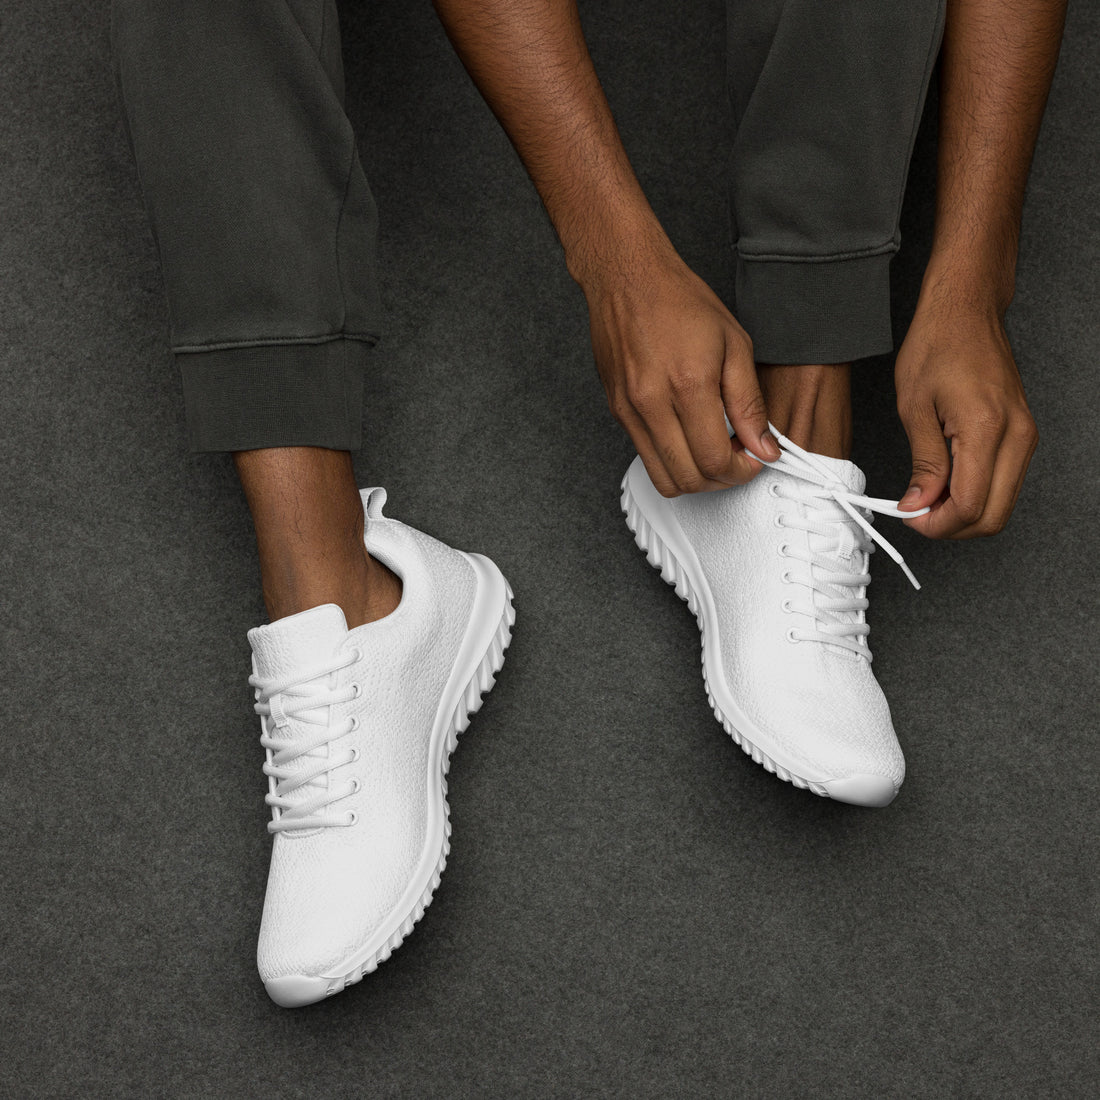 Men’s White Athletic Shoes